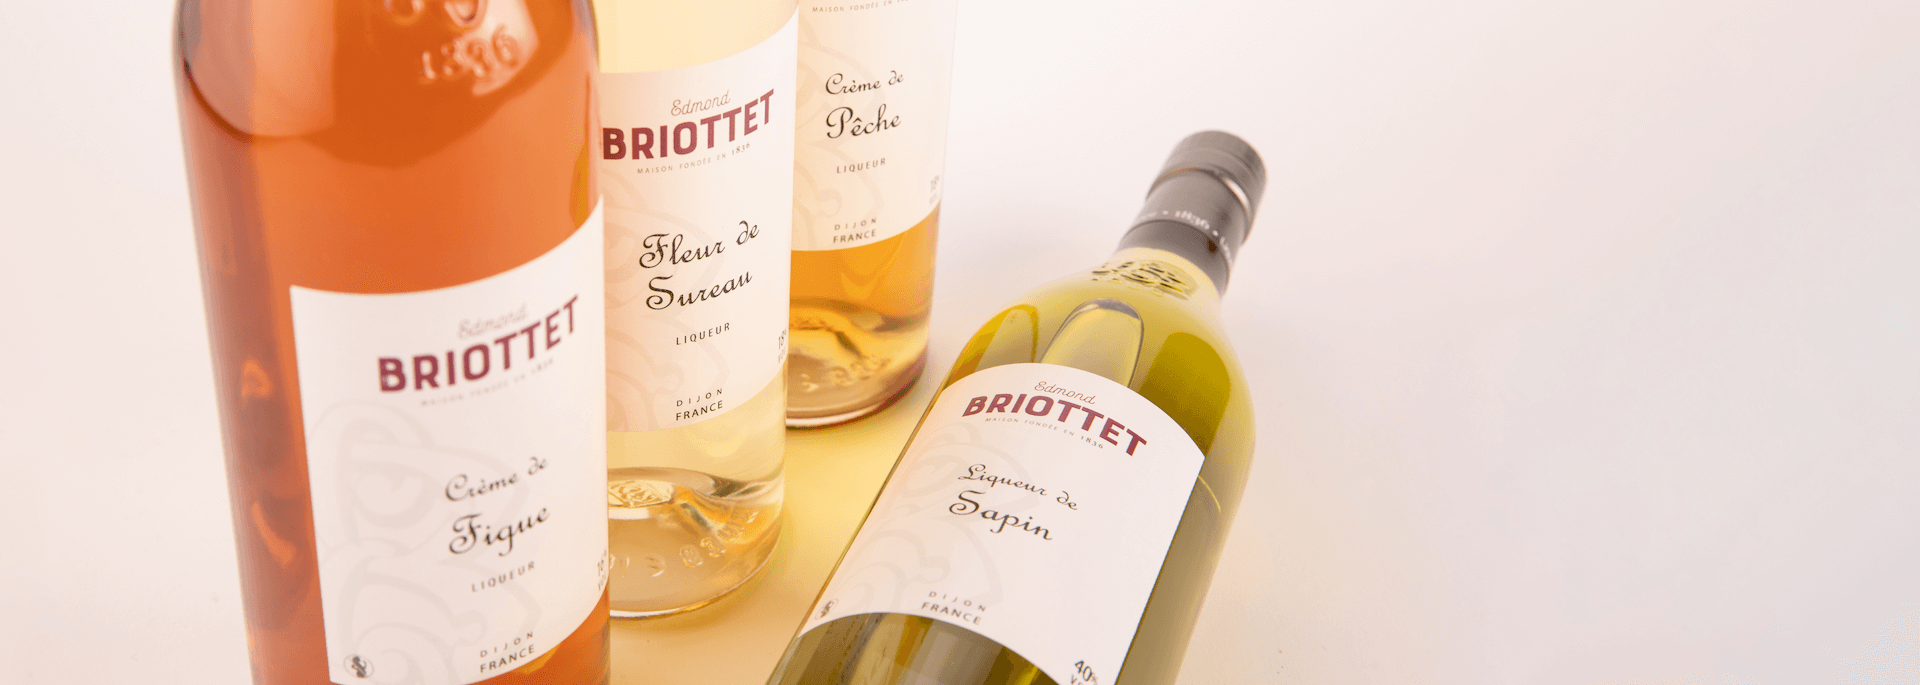 Liqueur de Café artisanale haut de gamme de la Maison Briottet